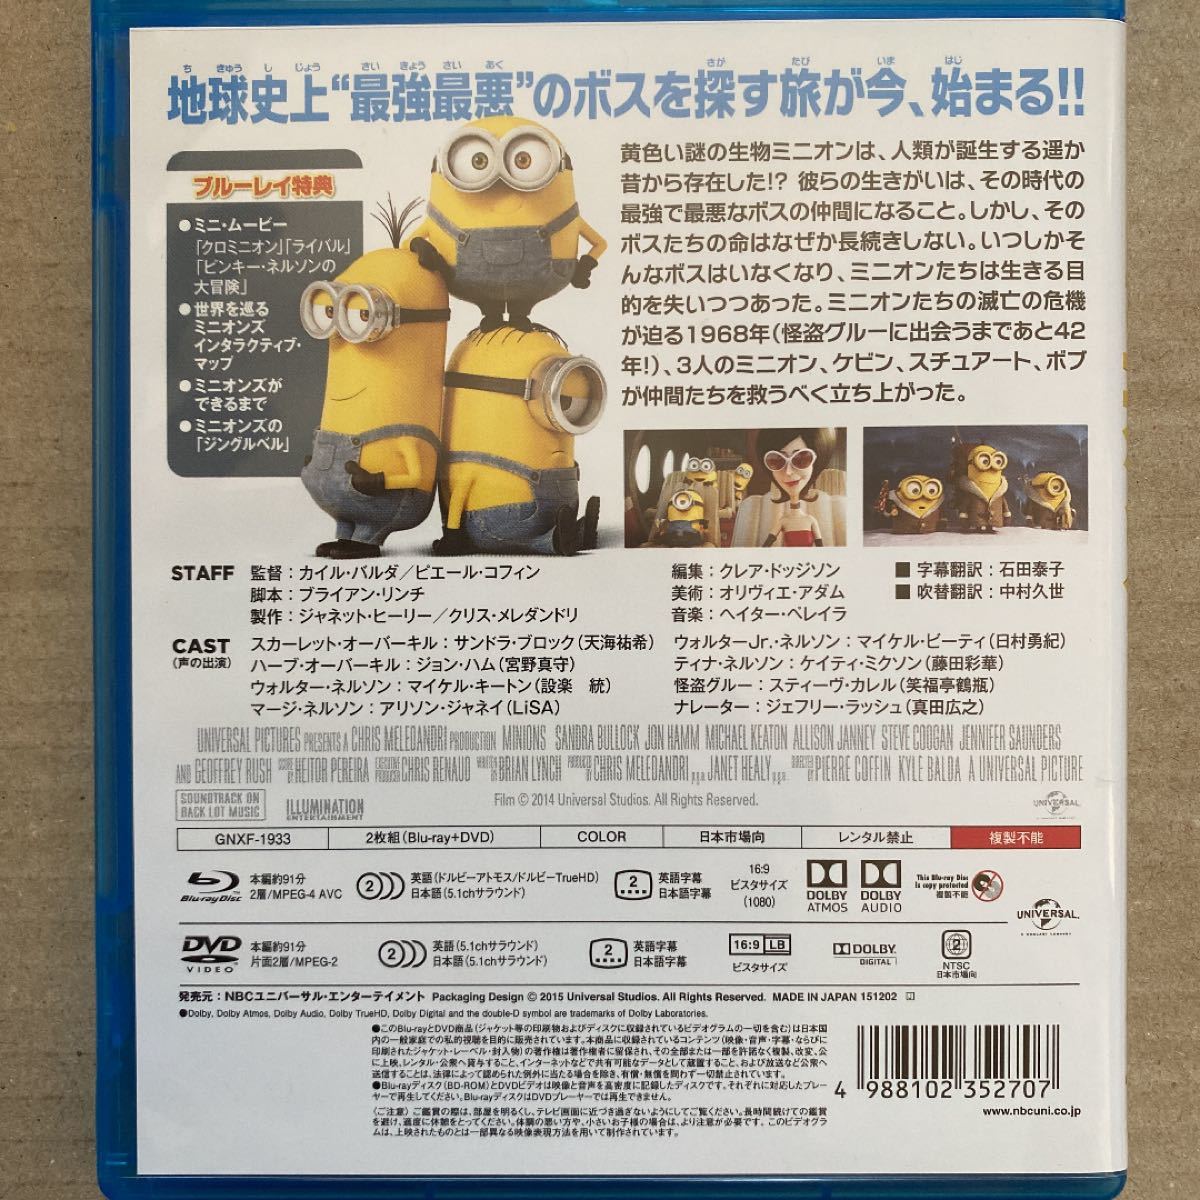 ミニオンズ ブルーレイ+DVDセット('15米)〈2枚組〉